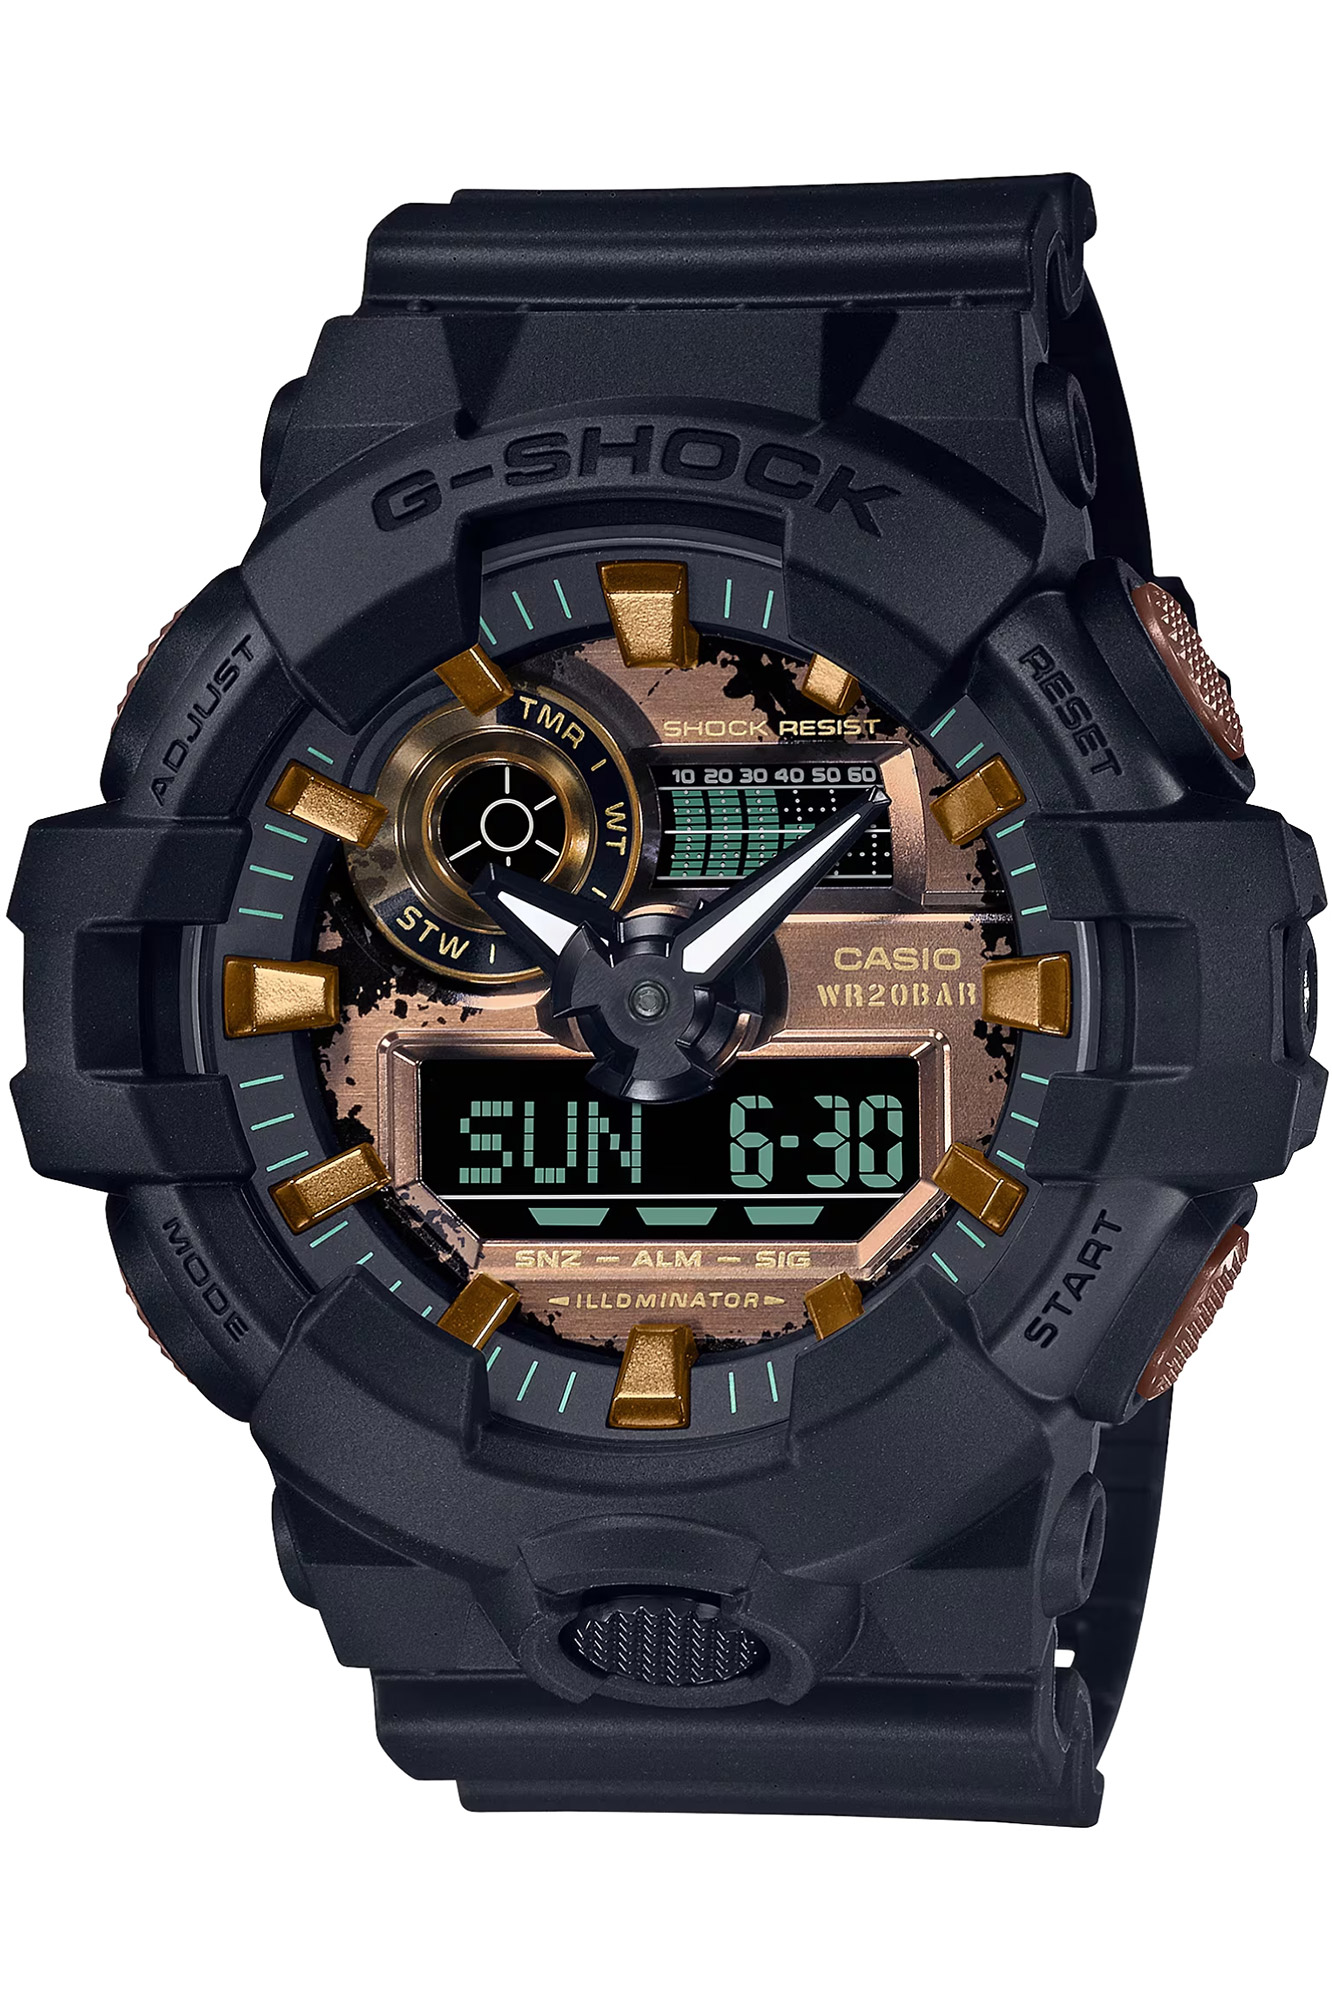 Reloj CASIO G-Shock ga-700rc-1aer